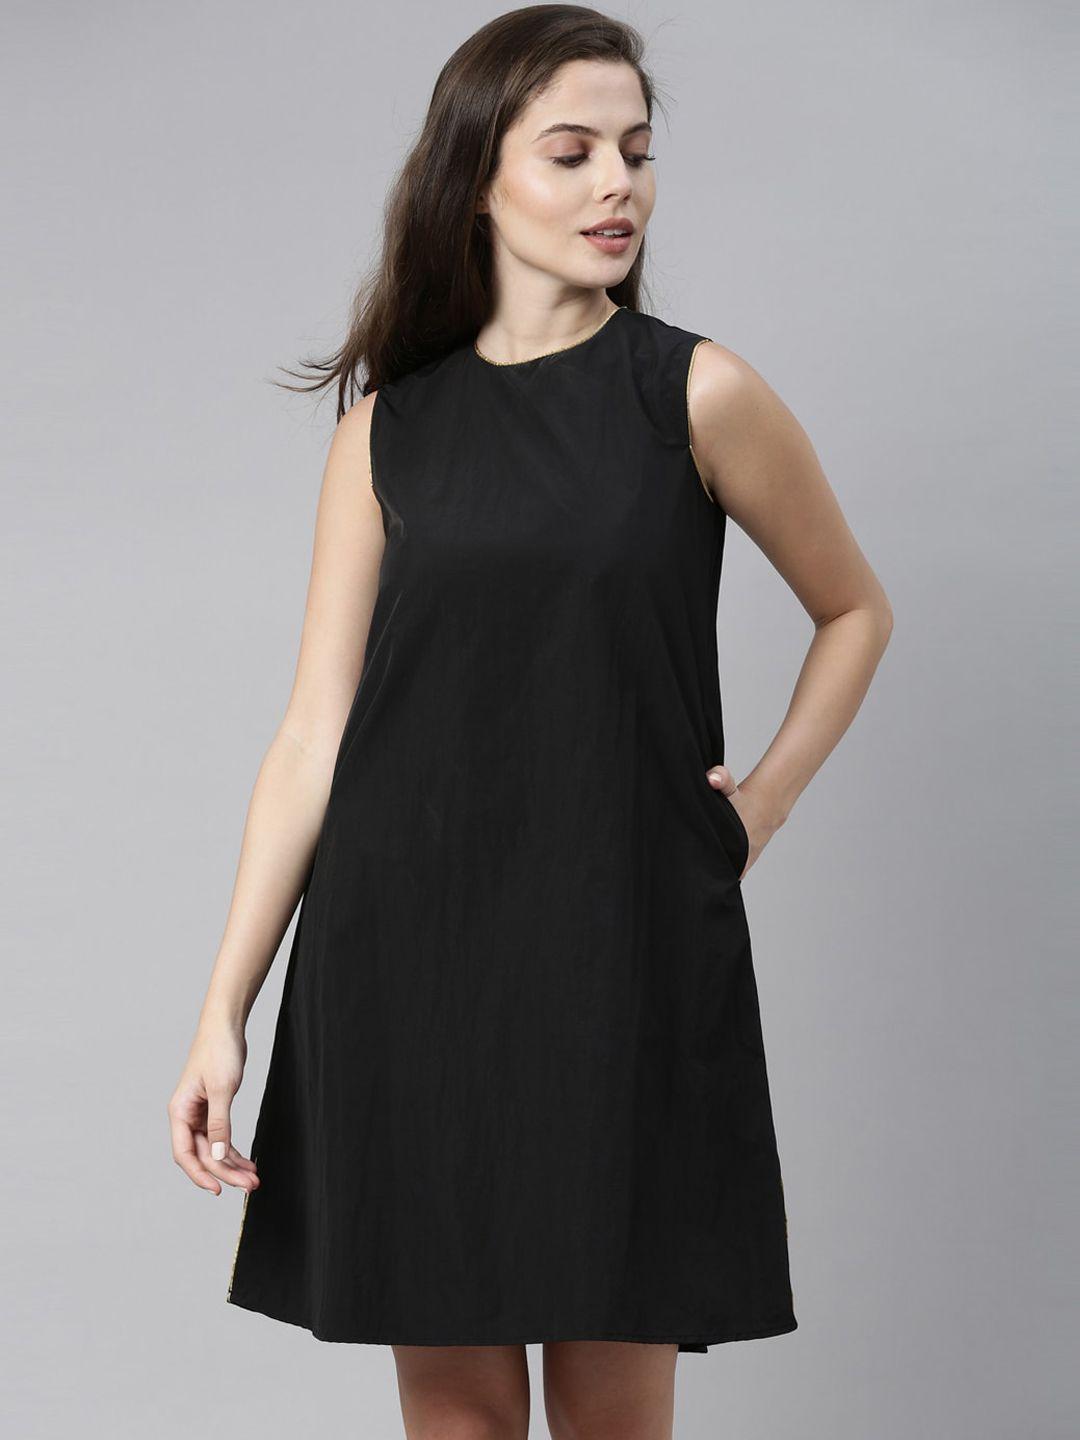 rareism-black-a-line-dress